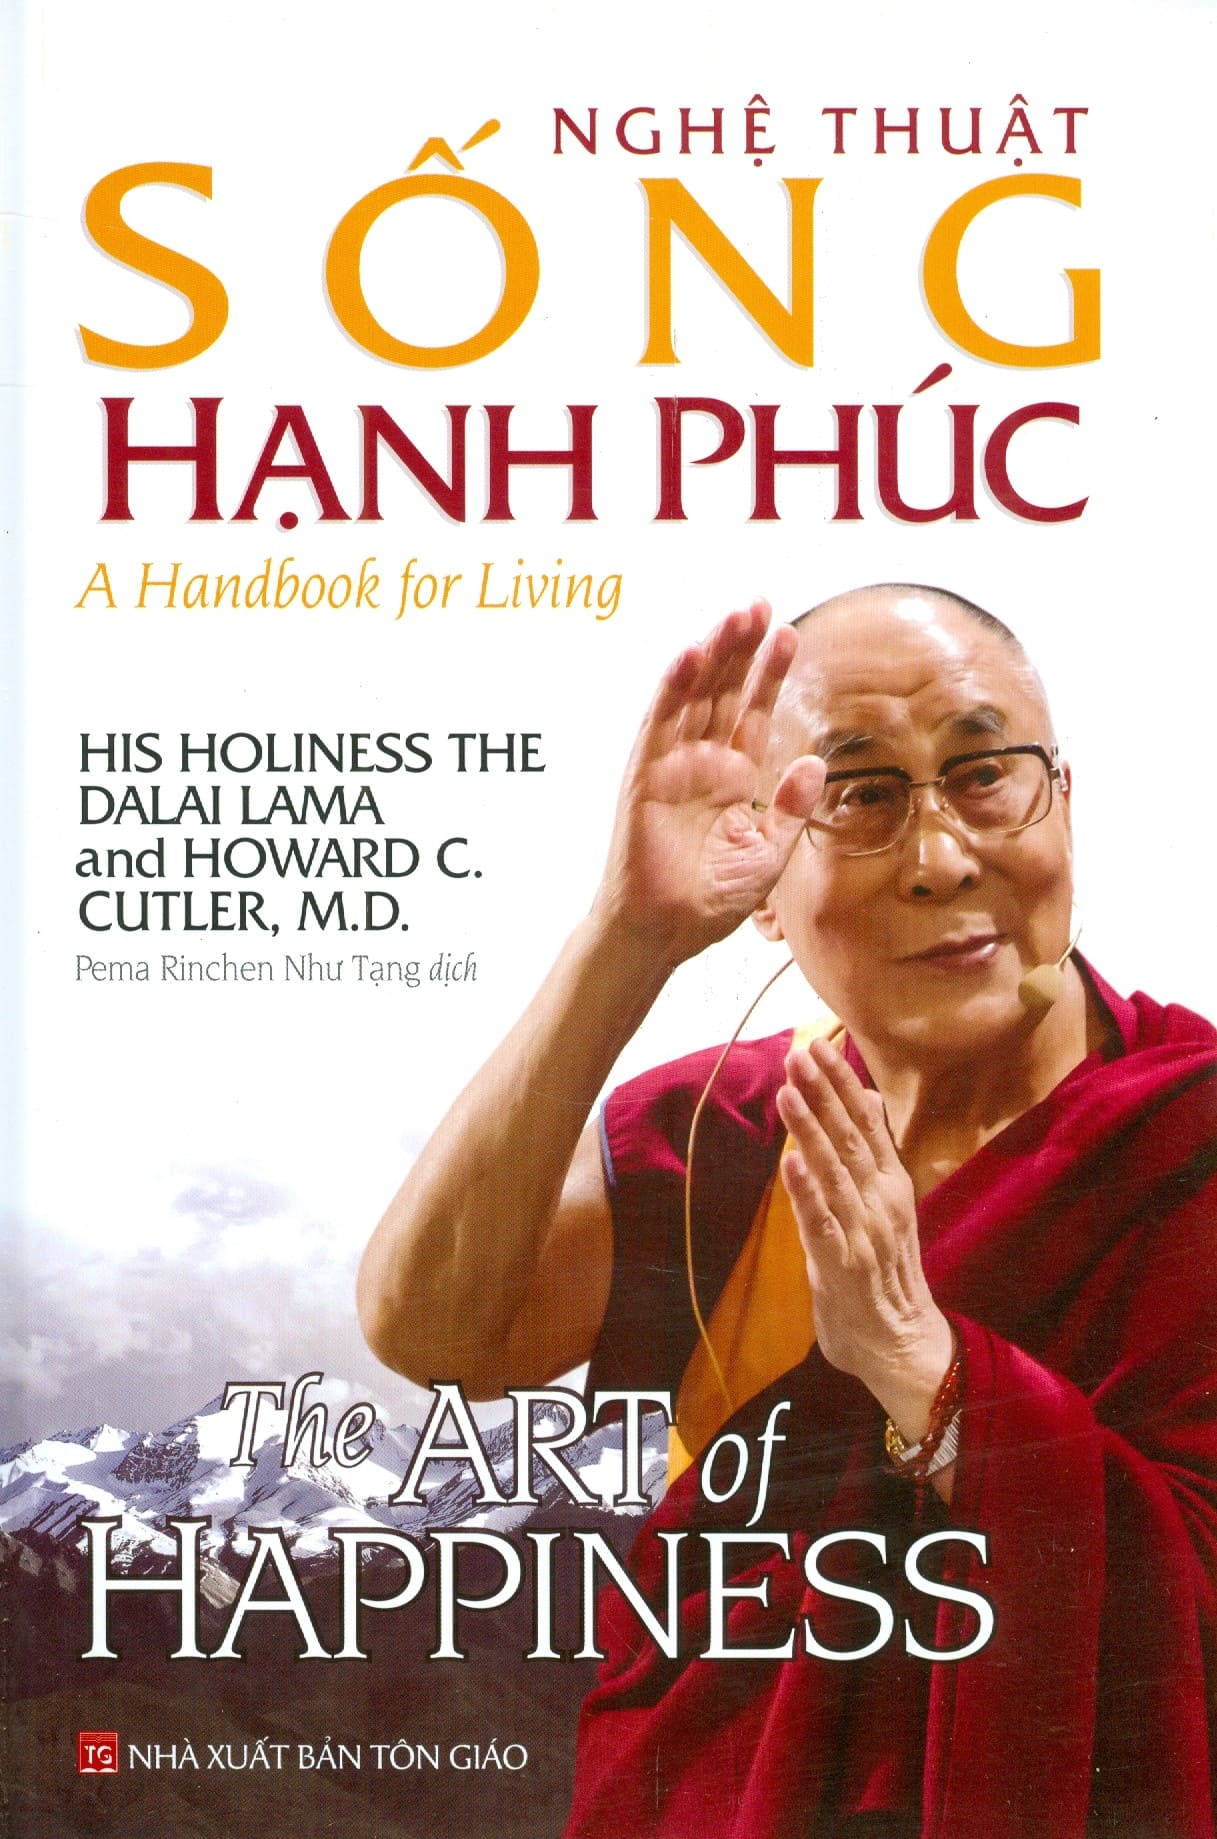 9. Nghệ Thuật Tạo Hạnh Phúc - Tác giả Dalai Lama và Howard Cutler